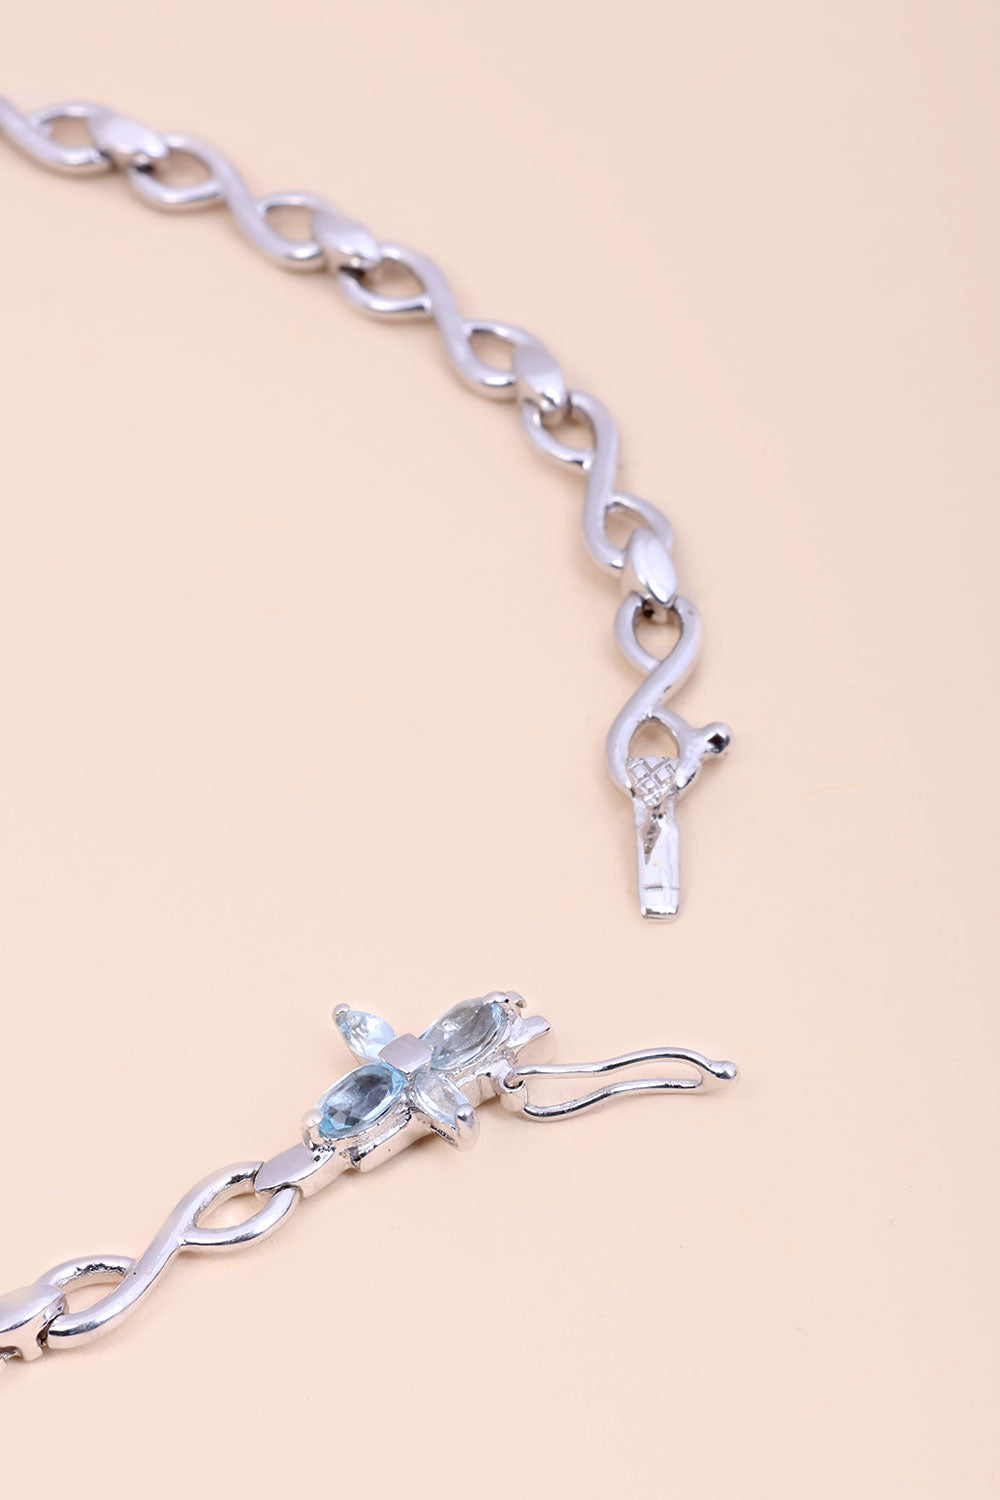 Blue Topaz Sterling Silver Necklace 10067121 - Avishya